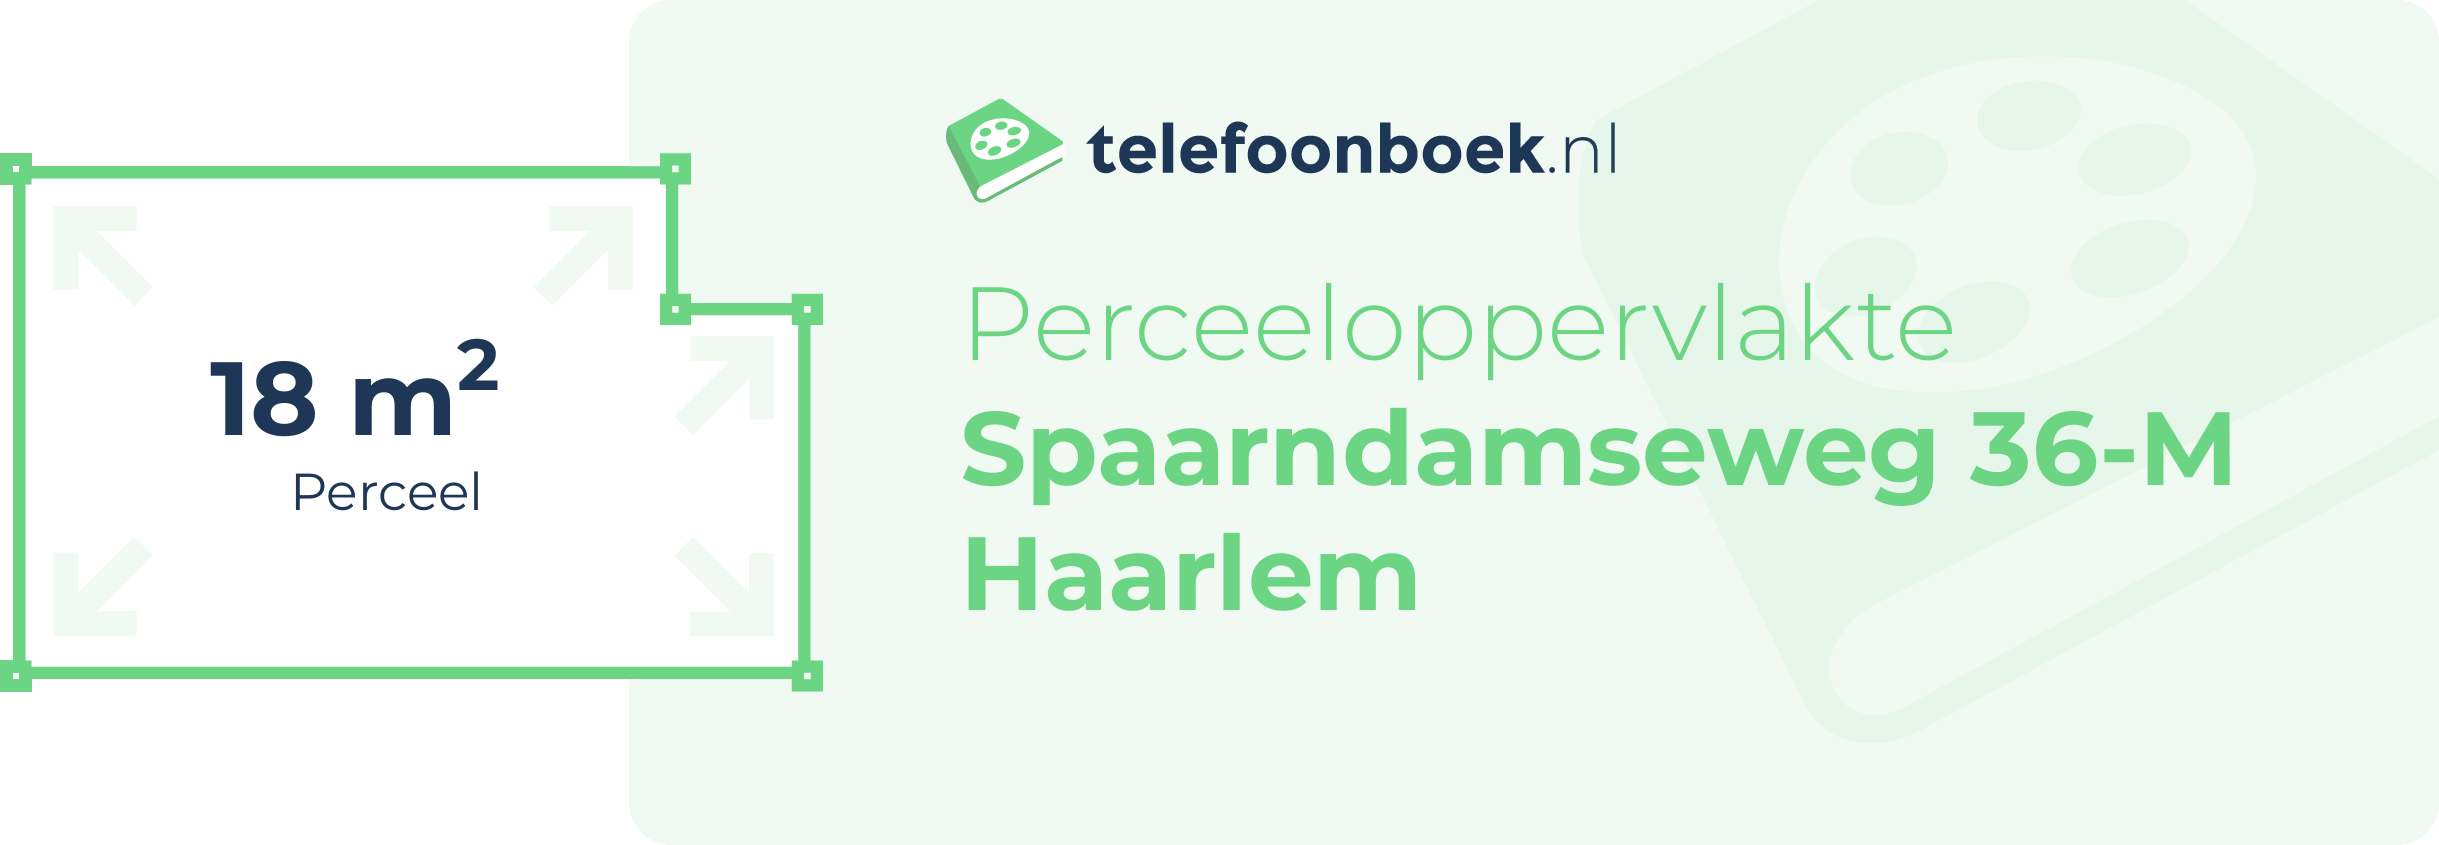 Perceeloppervlakte Spaarndamseweg 36-M Haarlem